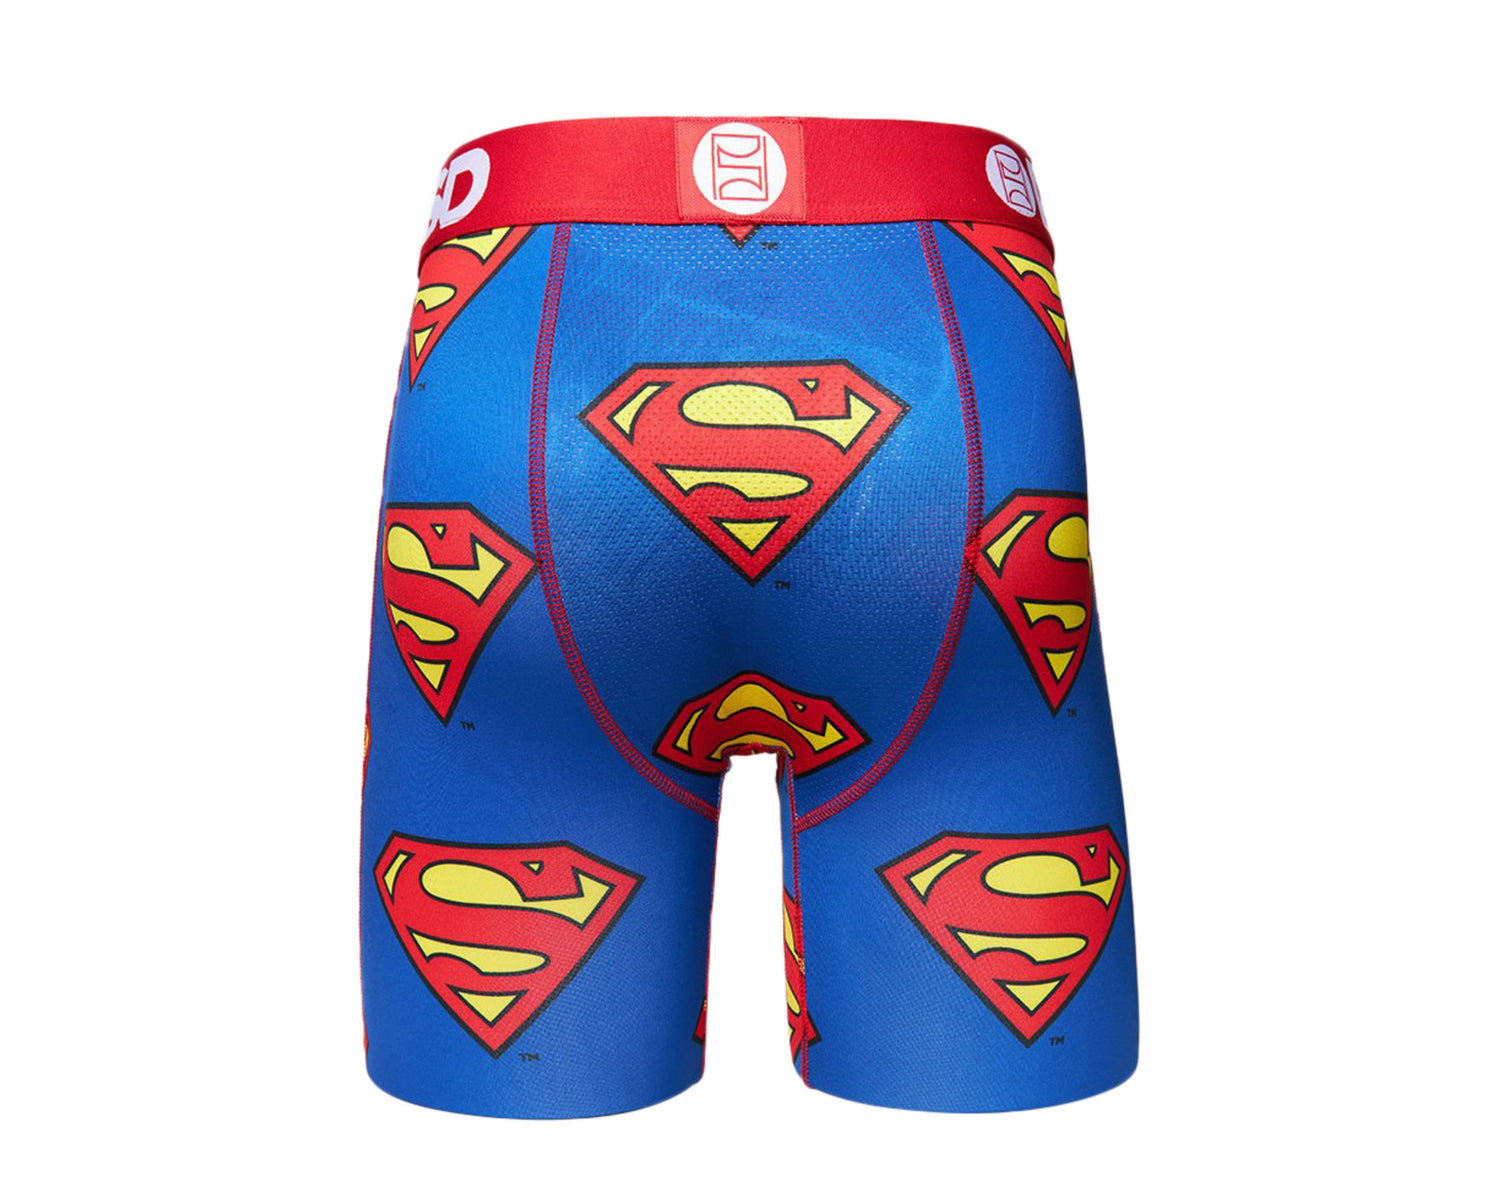 PSD DC - Superman Boxer Briefs Men's Underwear